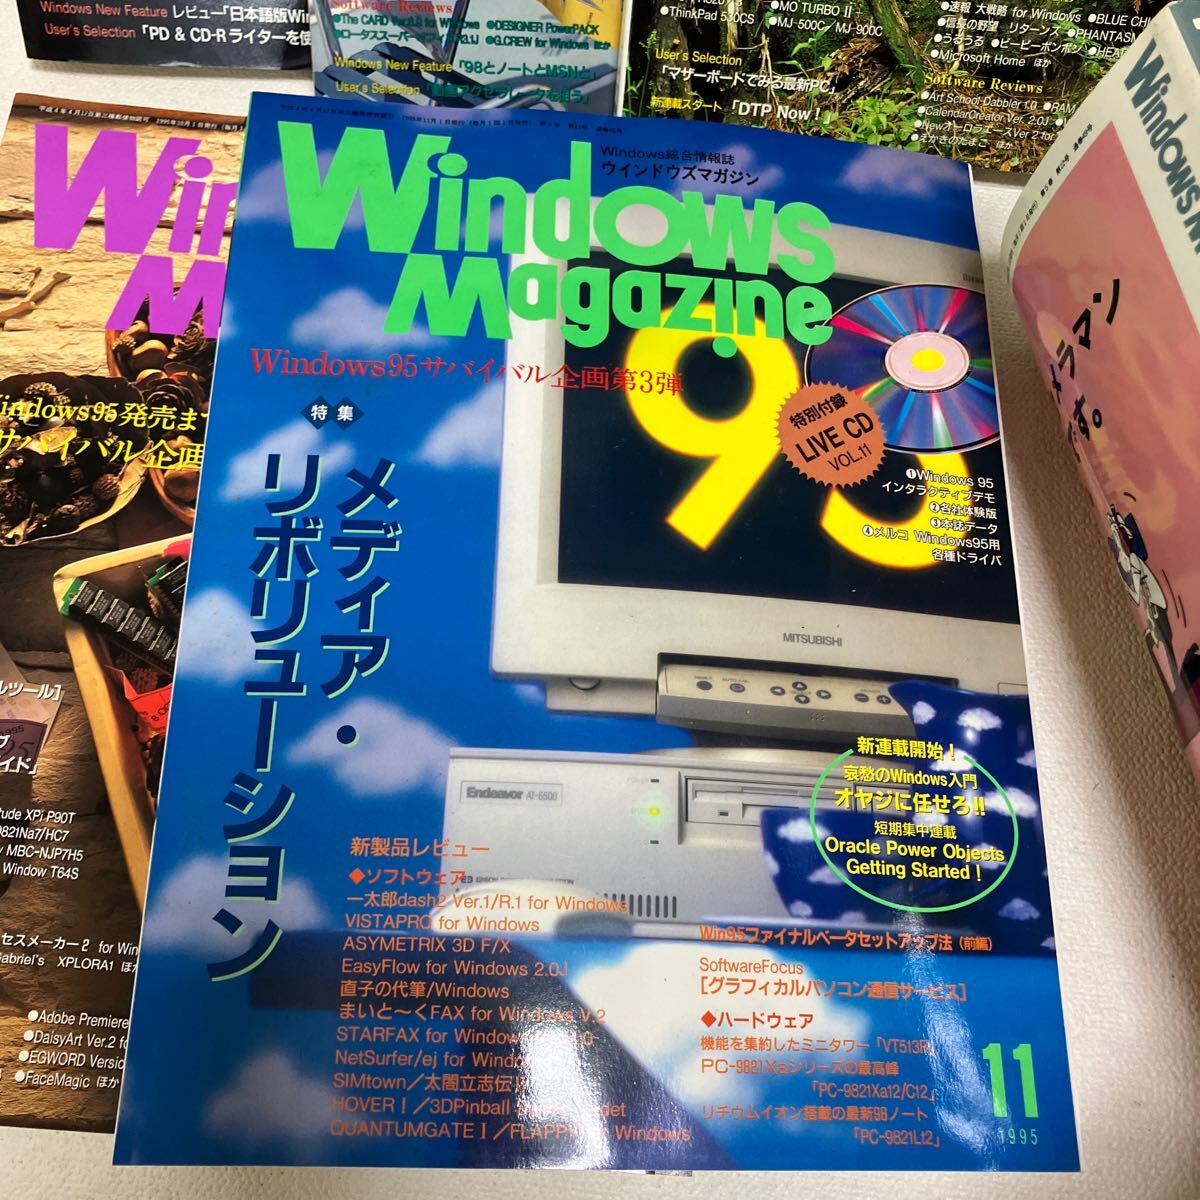 c352-28 80 журнал Windows Magazine окно z практическое применение информация журнал персональный компьютер совместно интернет журнал дополнение нет 1995 год загрязнения боль есть 